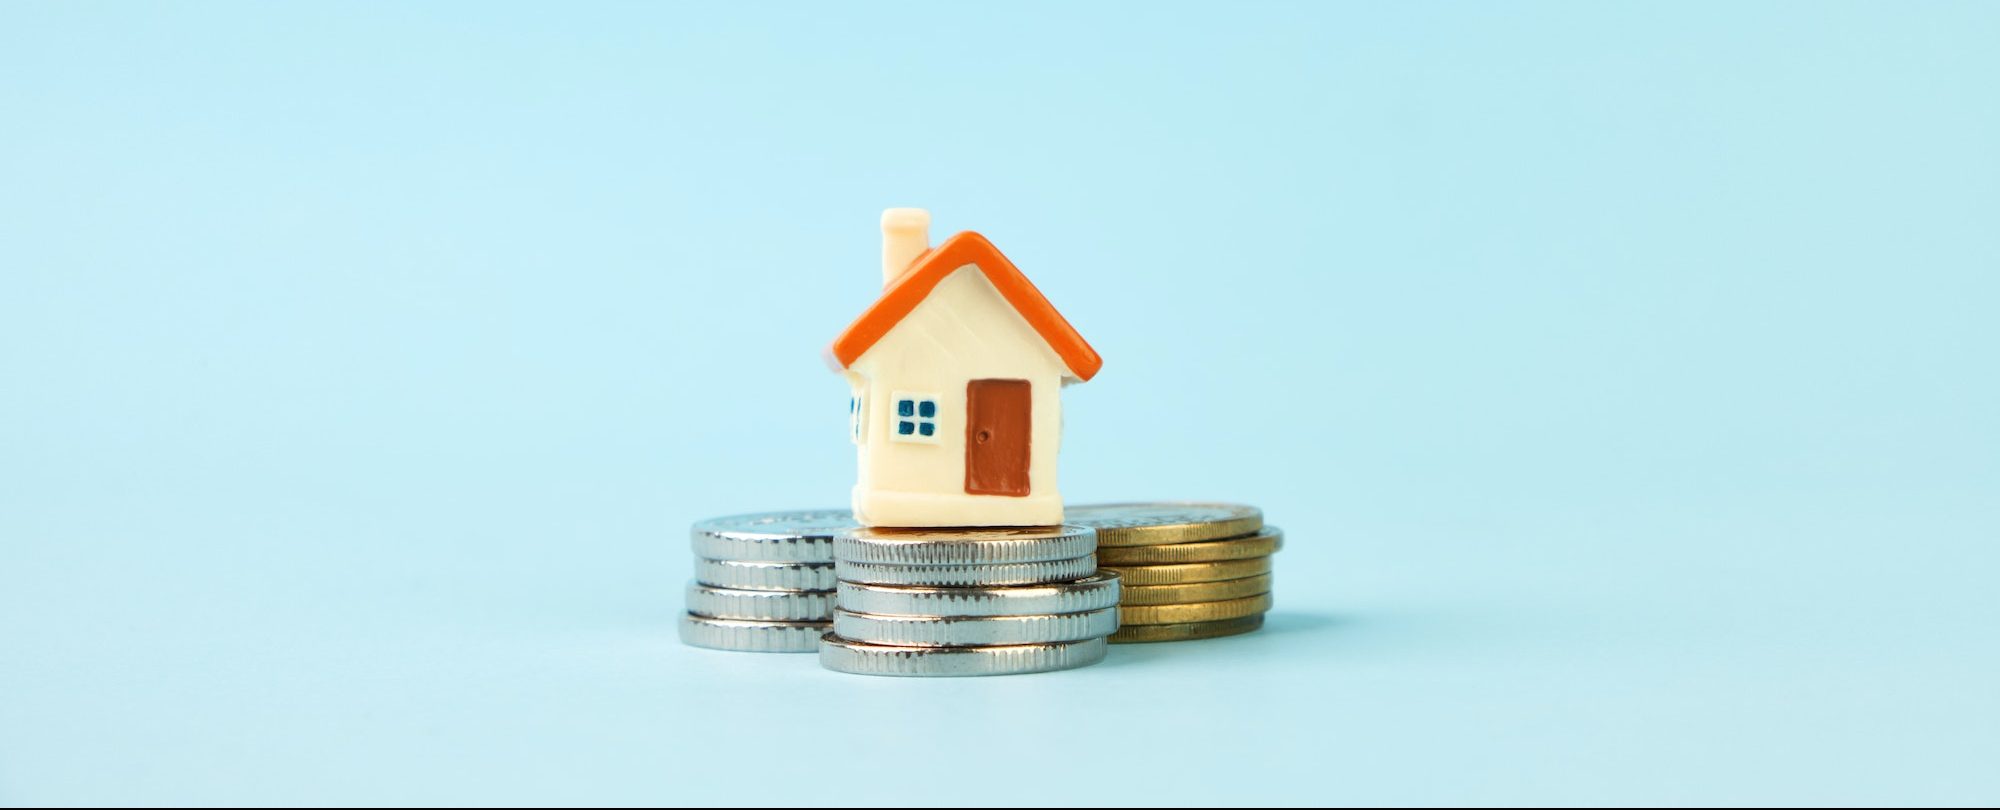 określanie wartości domu, metoda porównywania parami, koszt domu